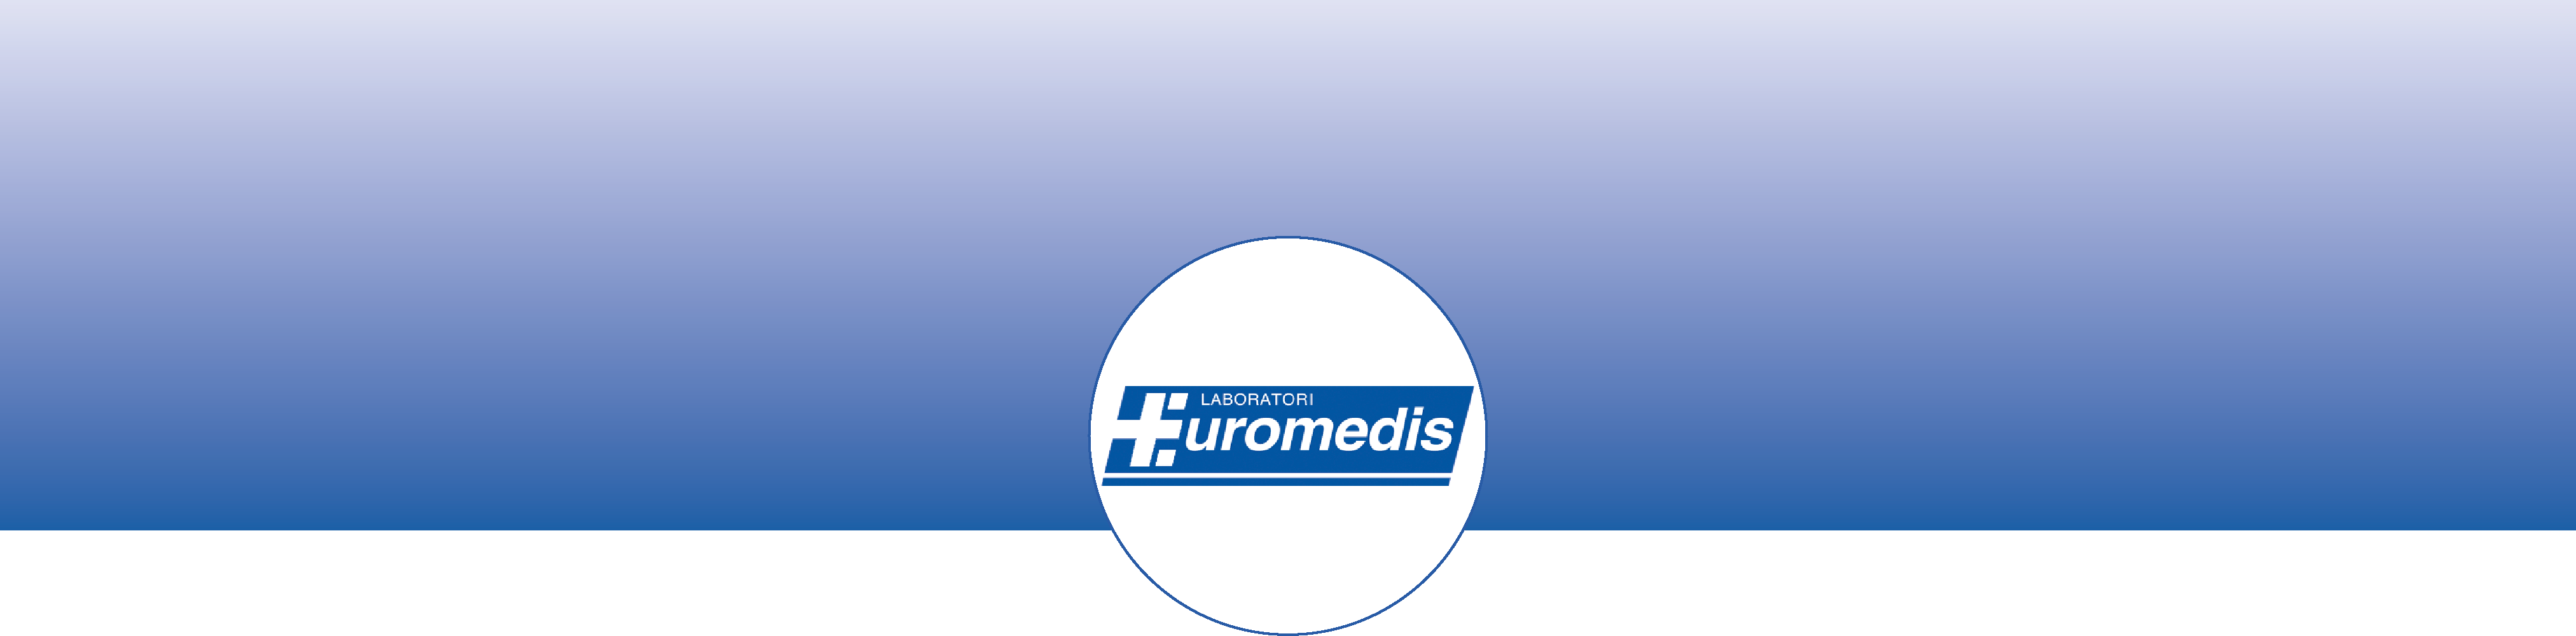 banner_euromedis